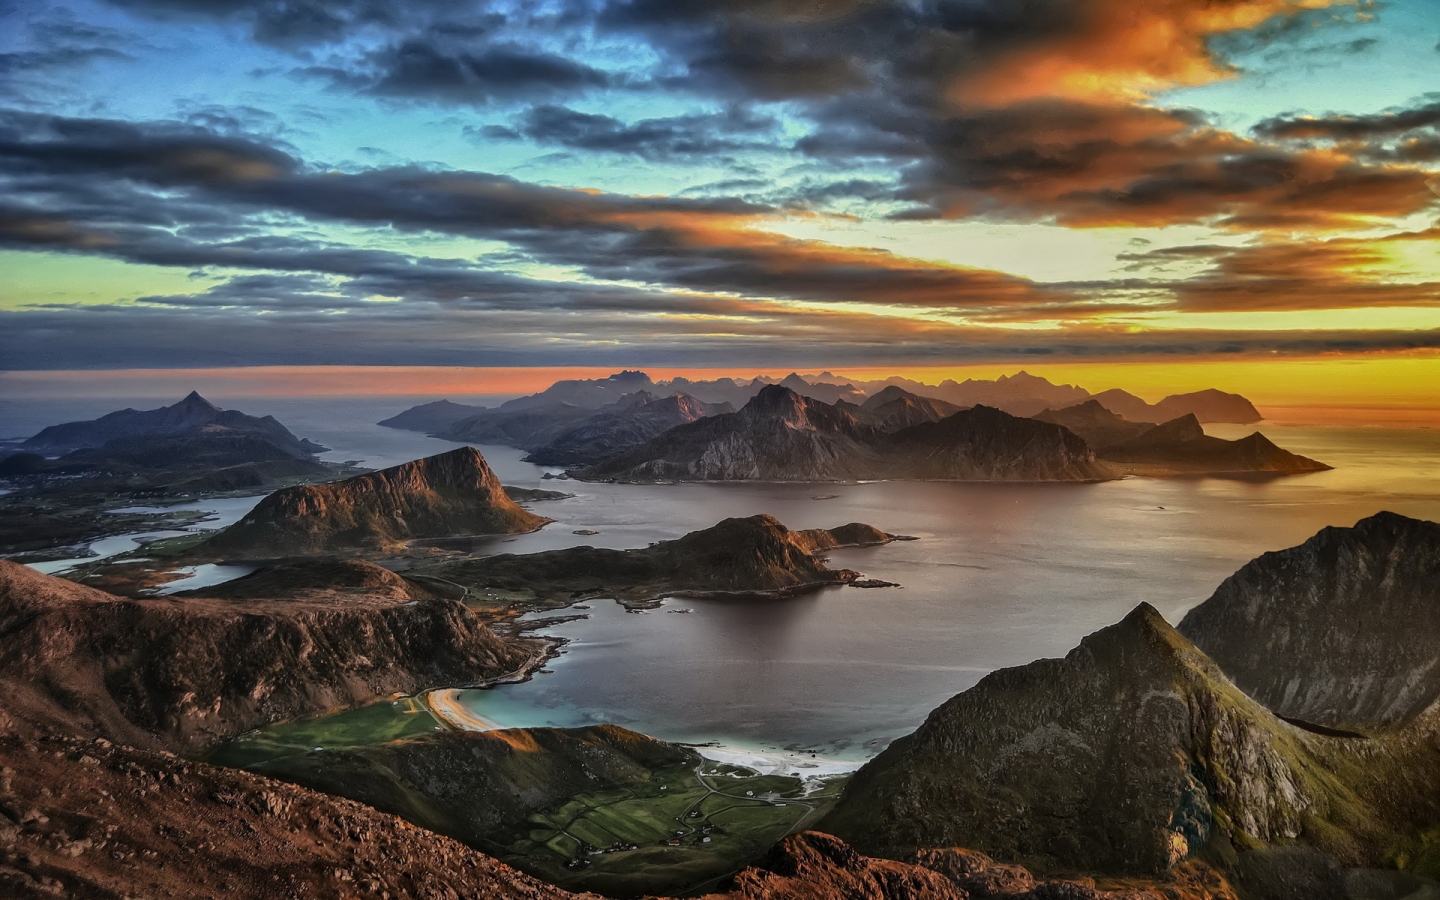 Lofoten Islands Sunset for 1440 x 900 widescreen resolution